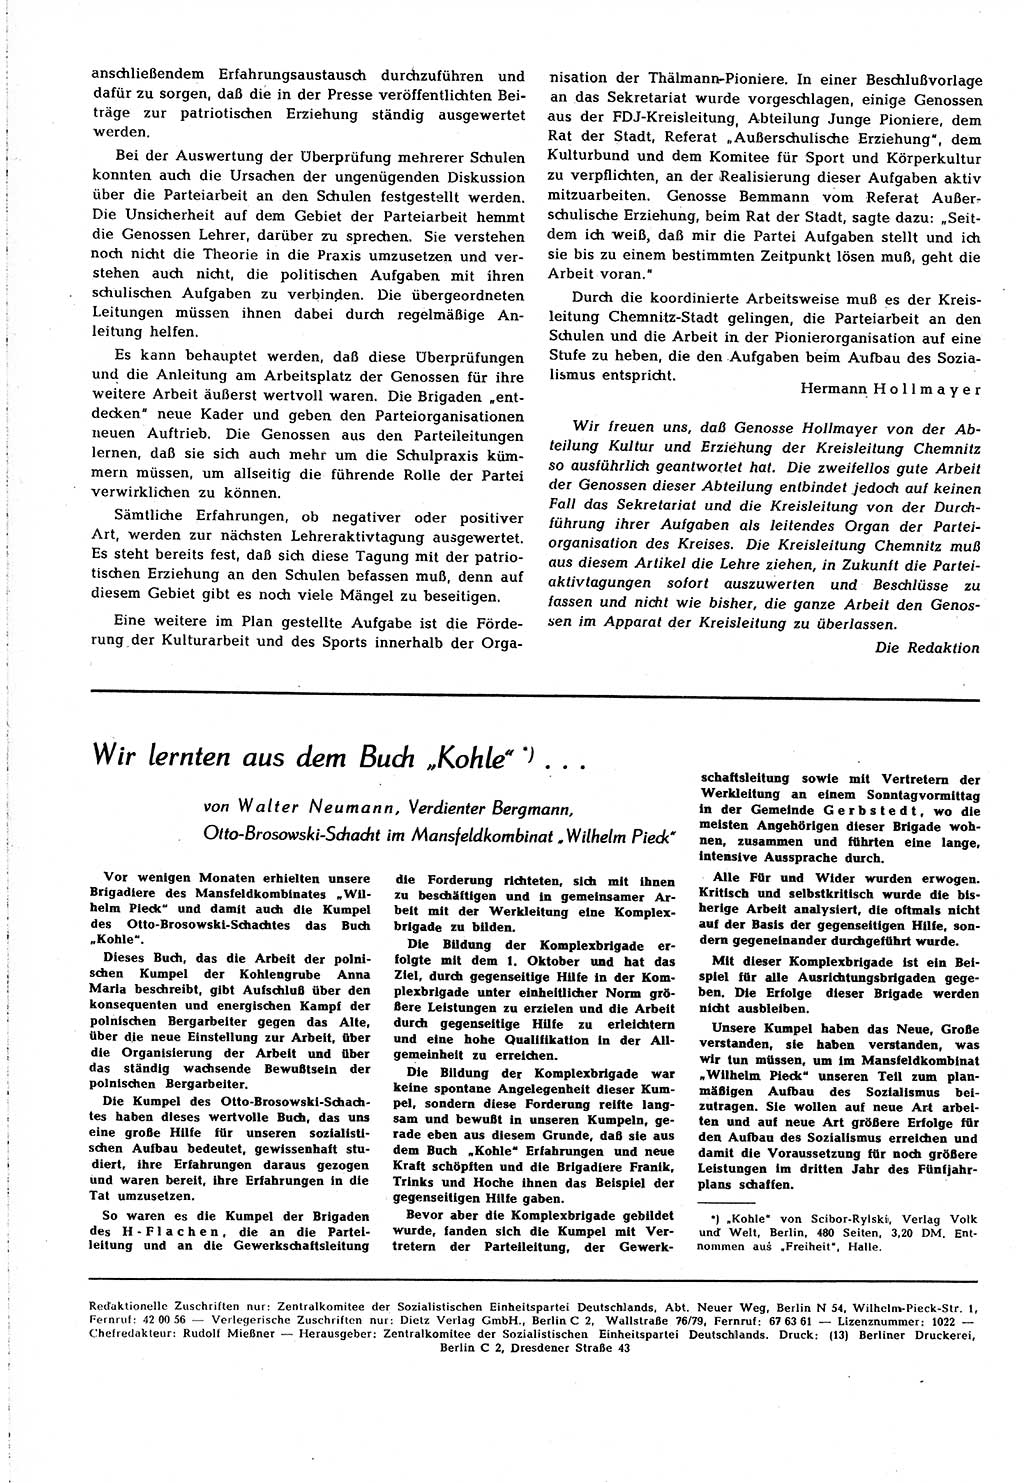 Neuer Weg (NW), Organ des Zentralkomitees (ZK) [Sozialistische Einheitspartei Deutschlands (SED)] für alle Parteiarbeiter, 8. Jahrgang [Deutsche Demokratische Republik (DDR)] 1953, Heft 4/44 (NW ZK SED DDR 1953, H. 4/44)